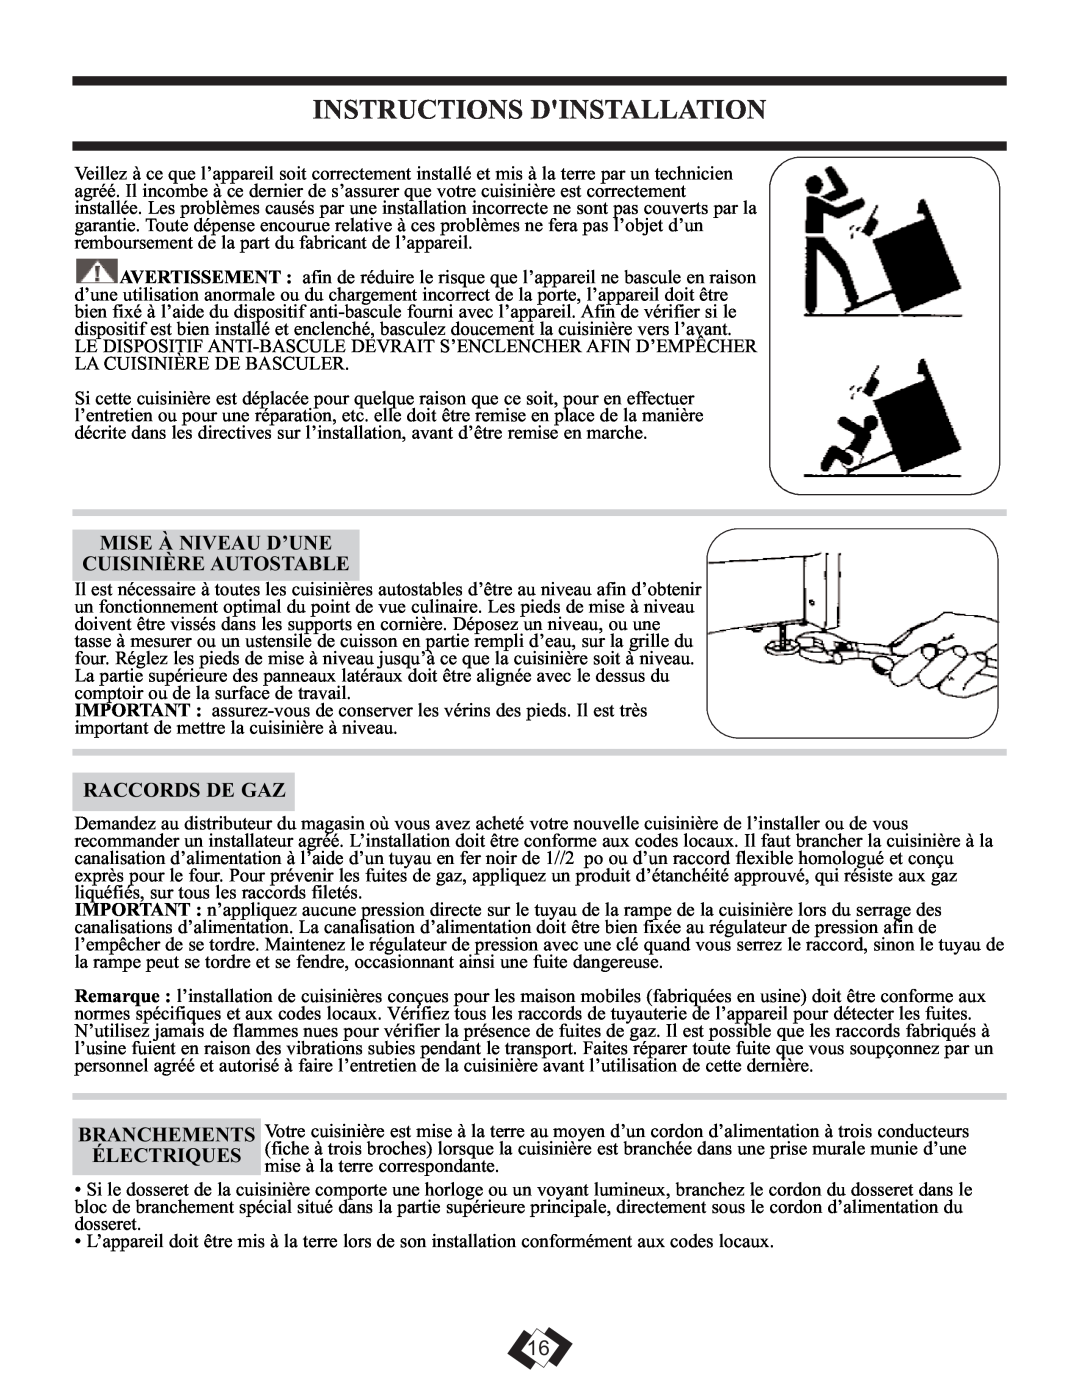 Danby DR399BLSGLP Instructions Dinstallation, Mise À Niveau D’Une Cuisinière Autostable, Raccords De Gaz 